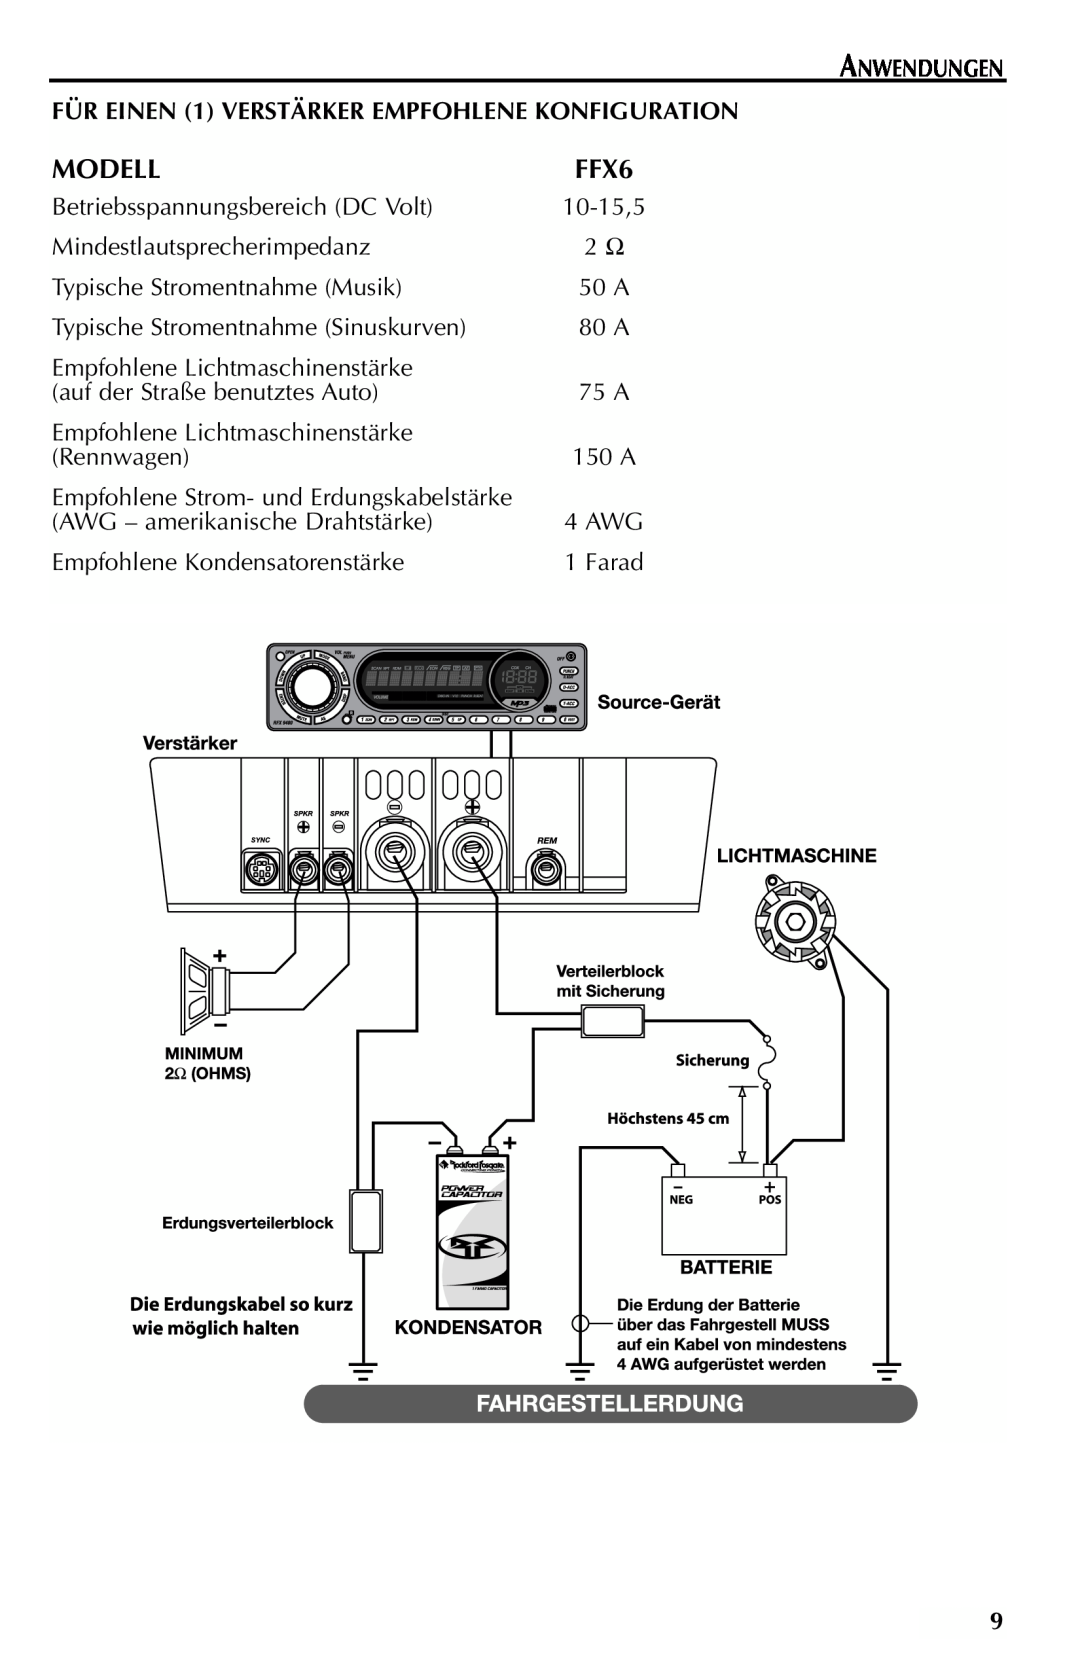 Rockford Fosgate FFX6 manual Modell, Anwendungen, FÜR EINEN 1 VERSTÄRKER EMPFOHLENE KONFIGURATION 